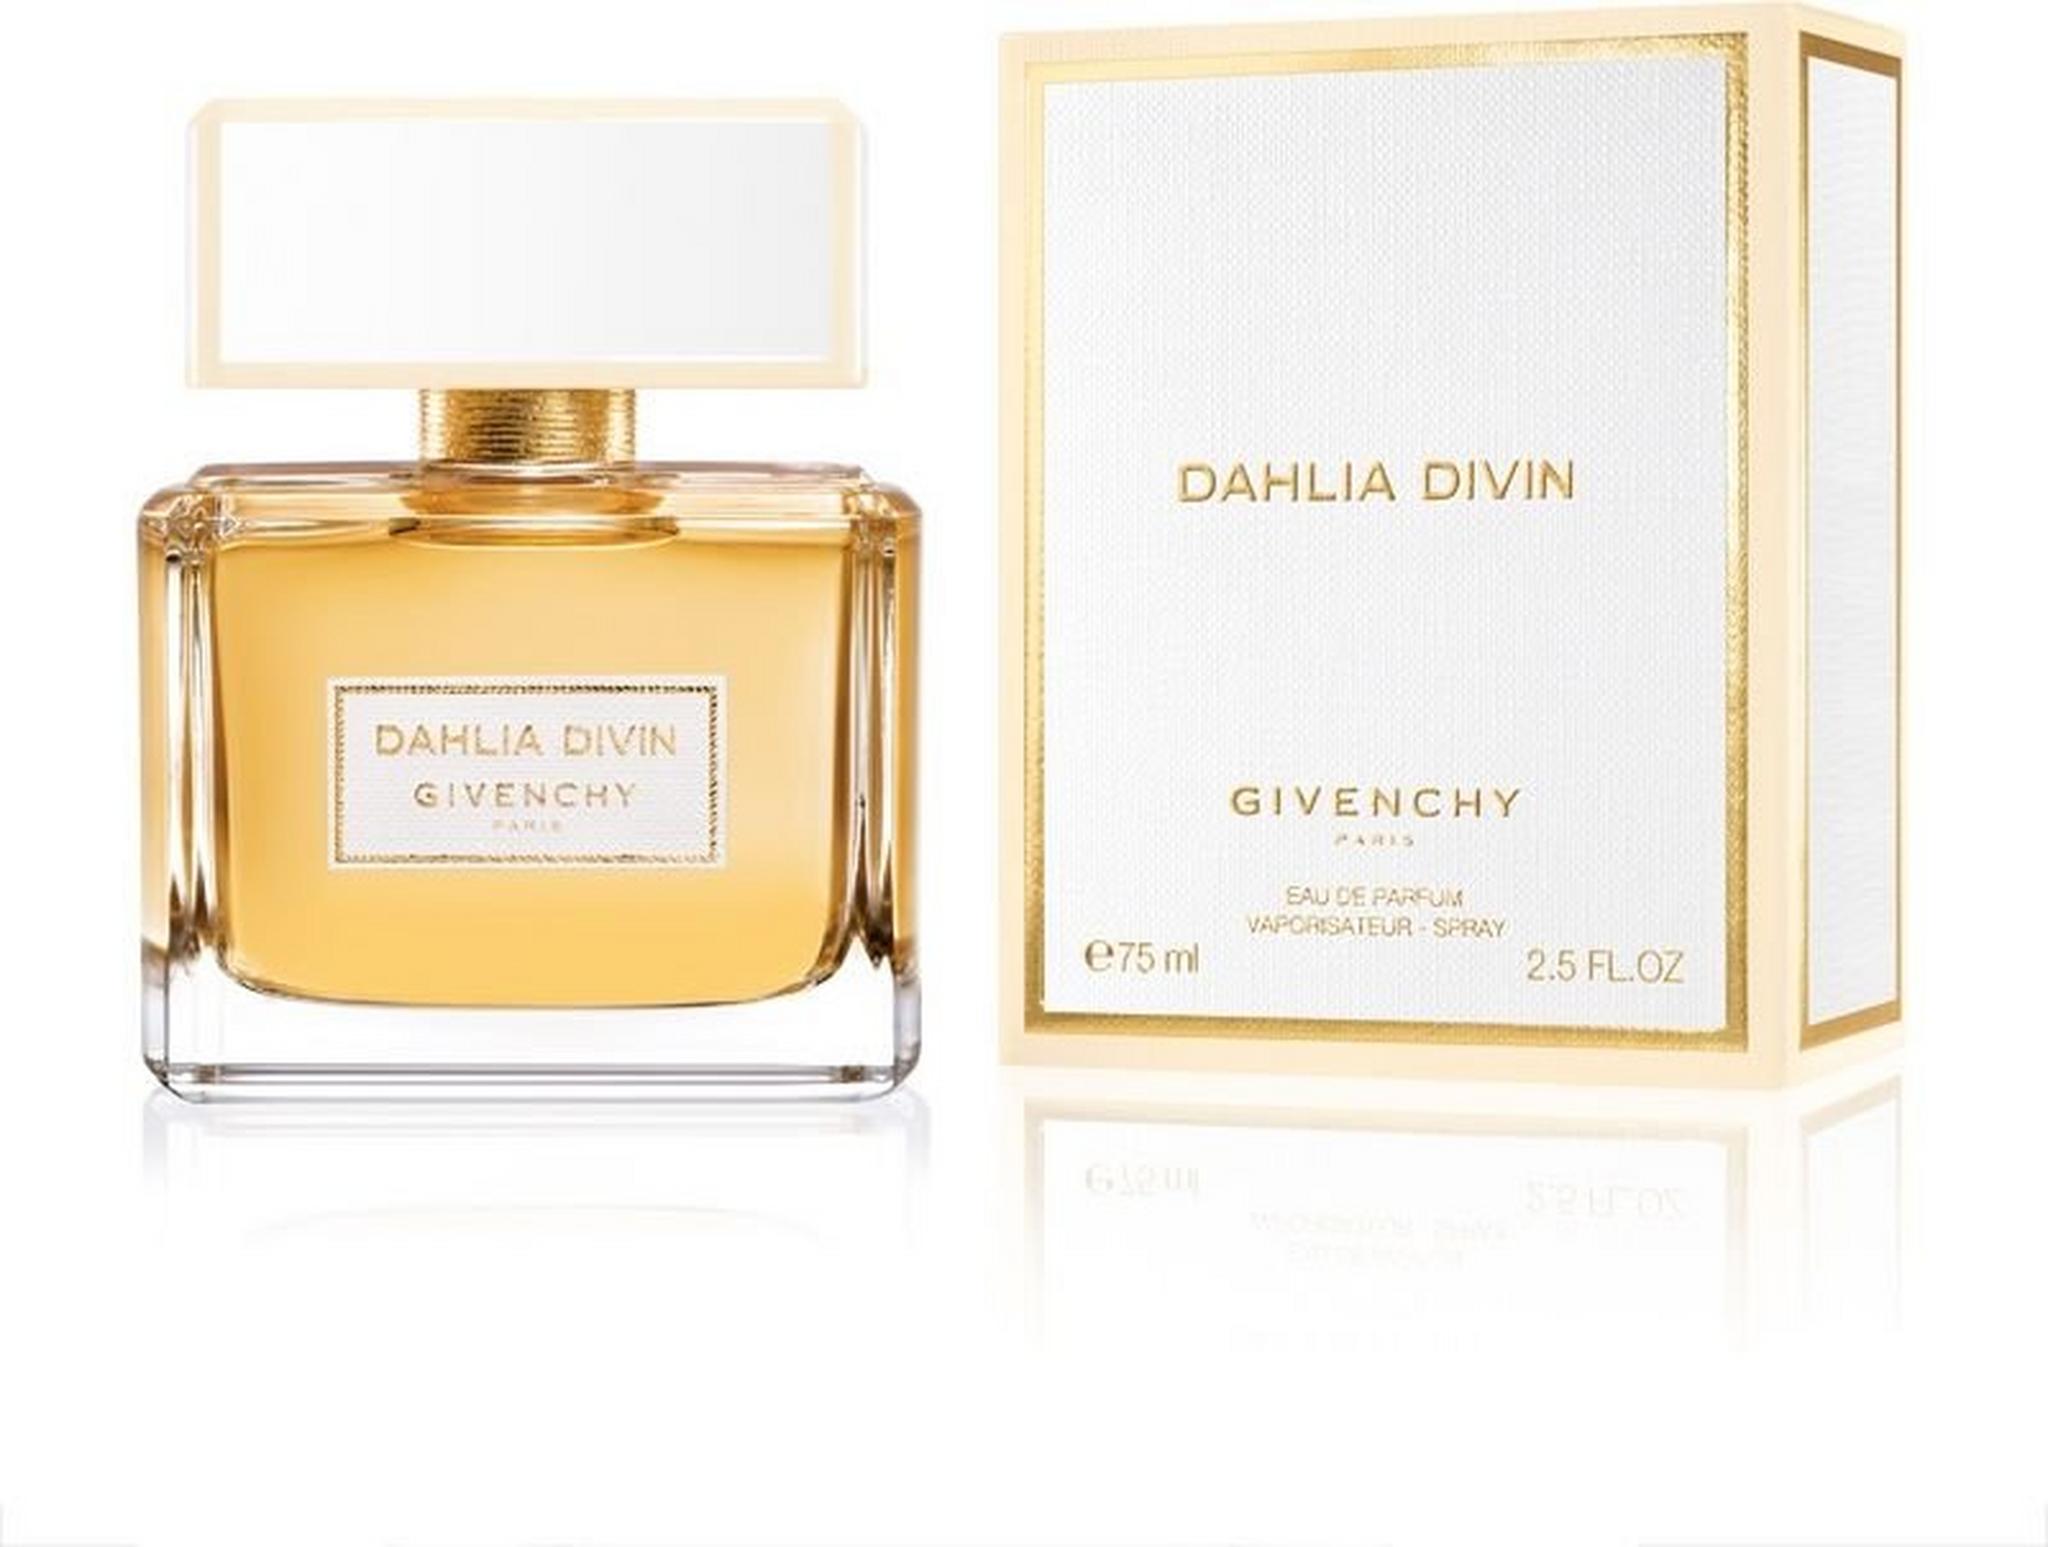 Givenchy Divin Dahlia Eau de Parfum for Women 75ml